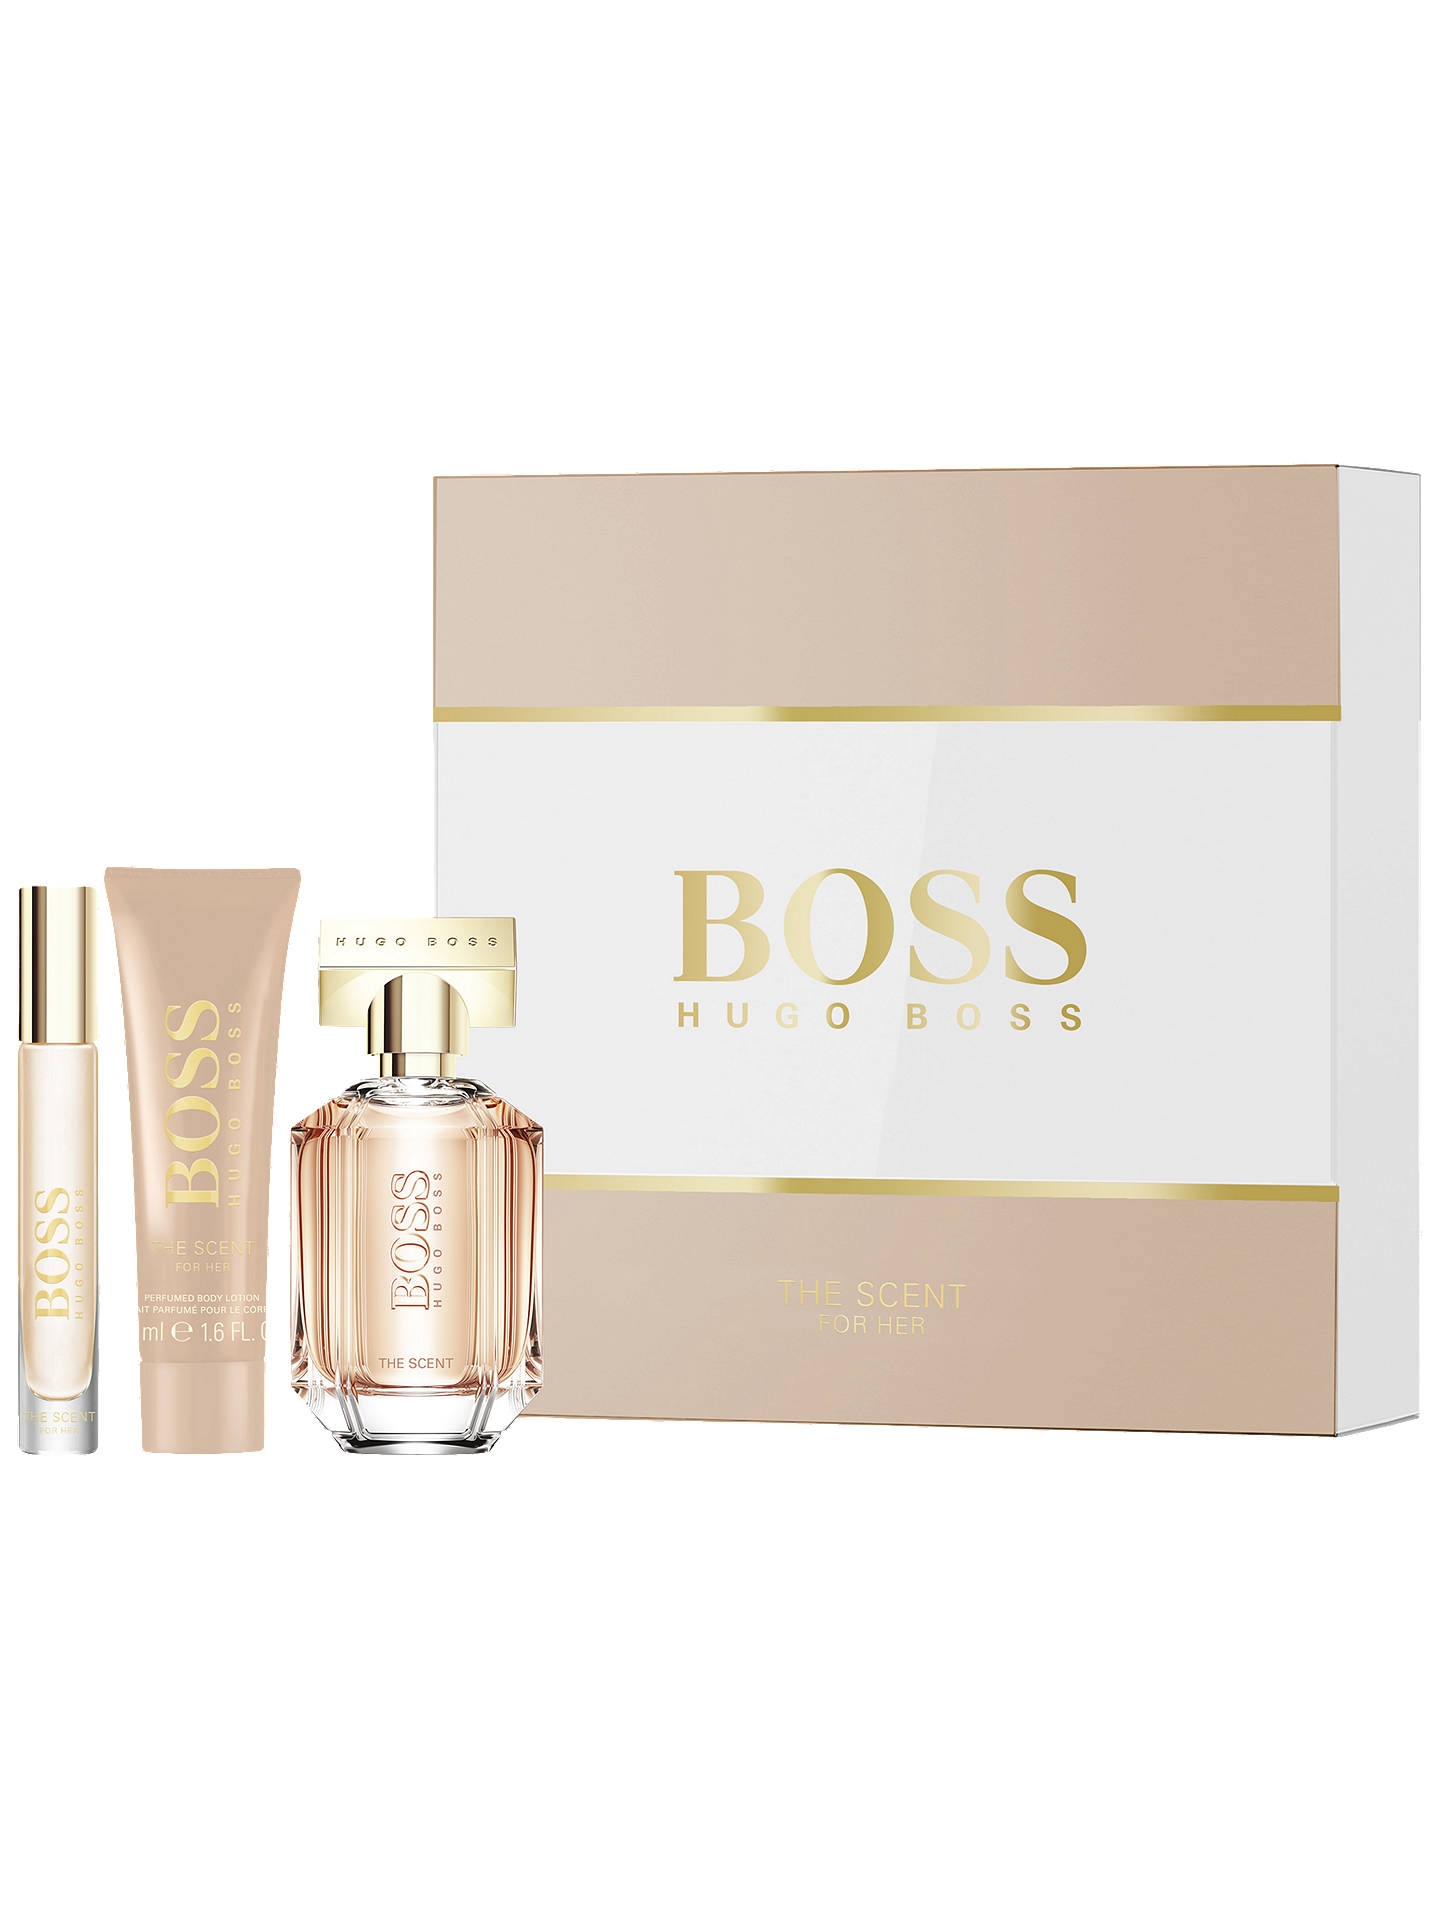 HUGO BOSS BOSS The Scent For Her 50ml Eau de Parfum Fragrance Gift Set ...